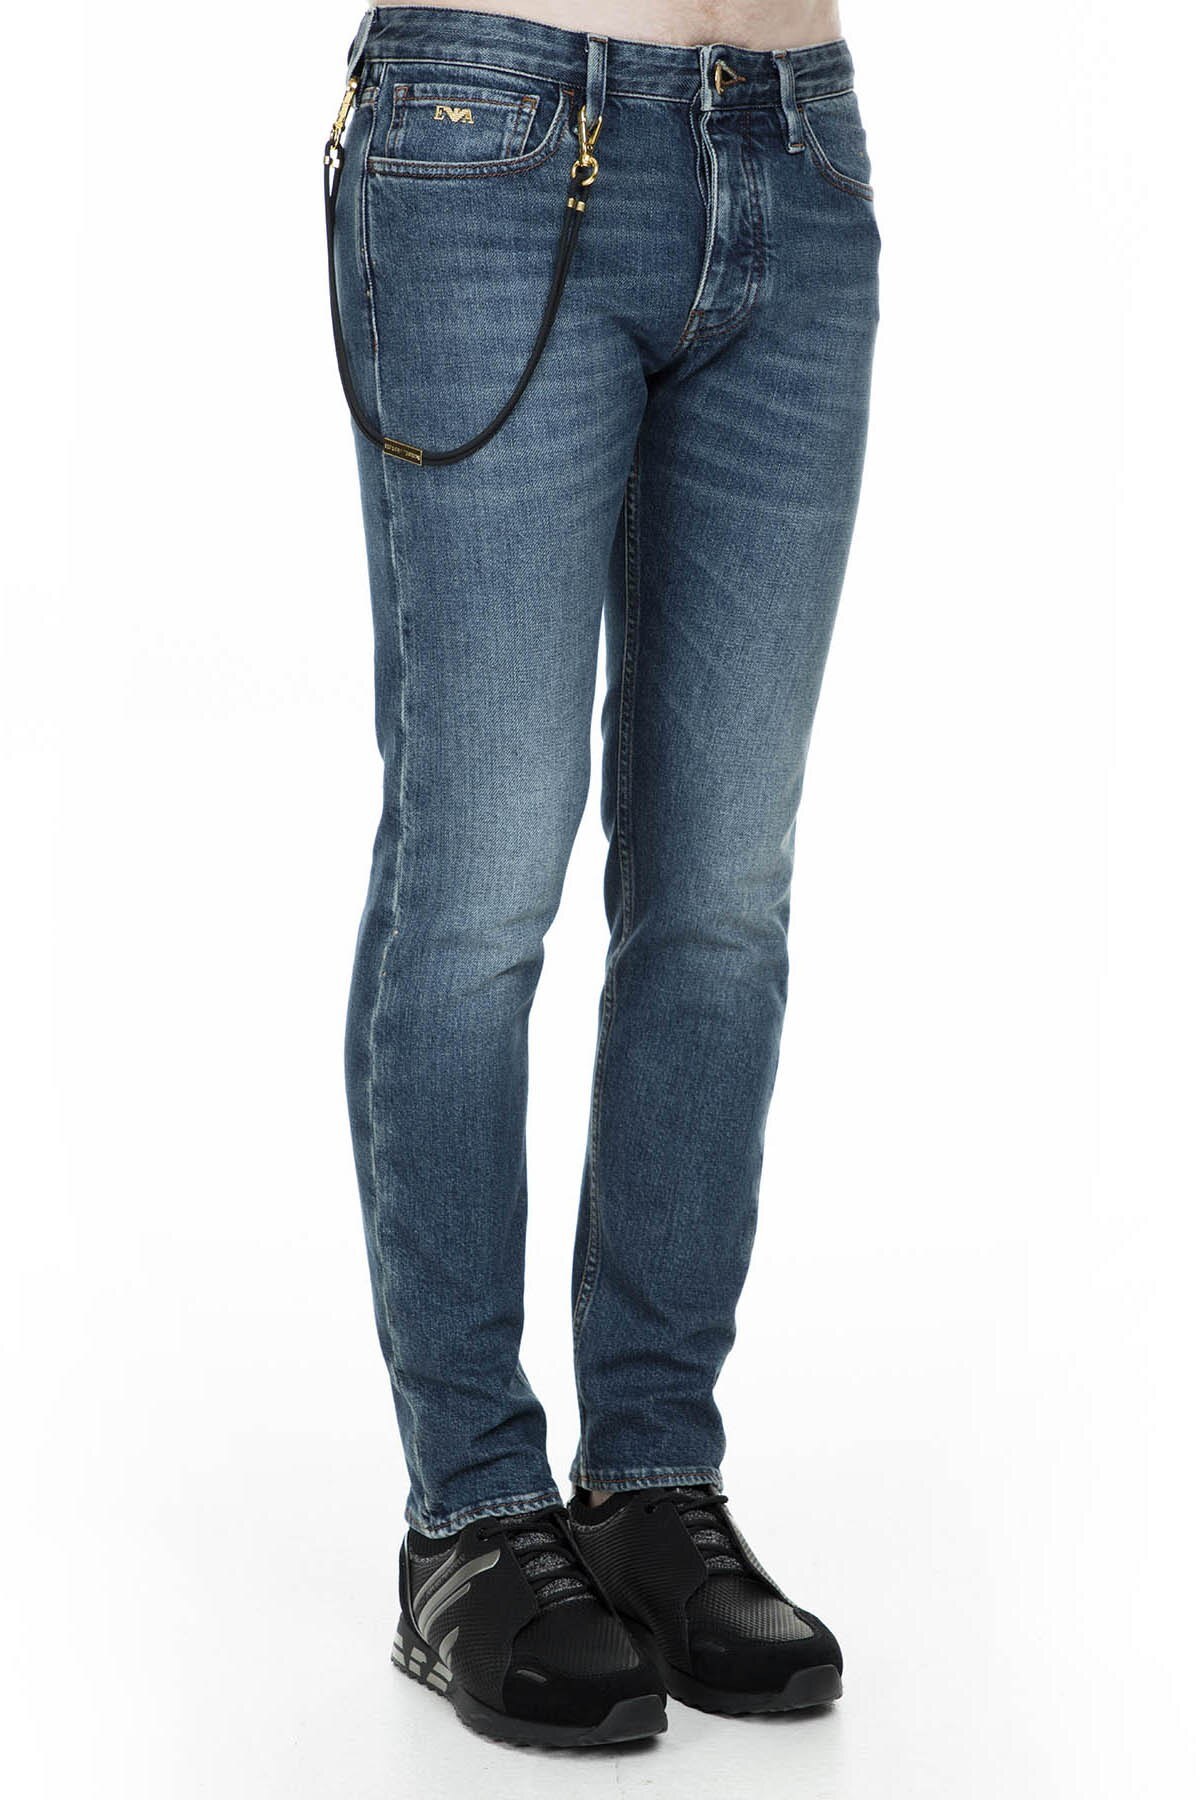 Emporio Armani J75 Jeans Erkek Kot Pantolon 6G1J75 1D8GZ 0942 MAVİ